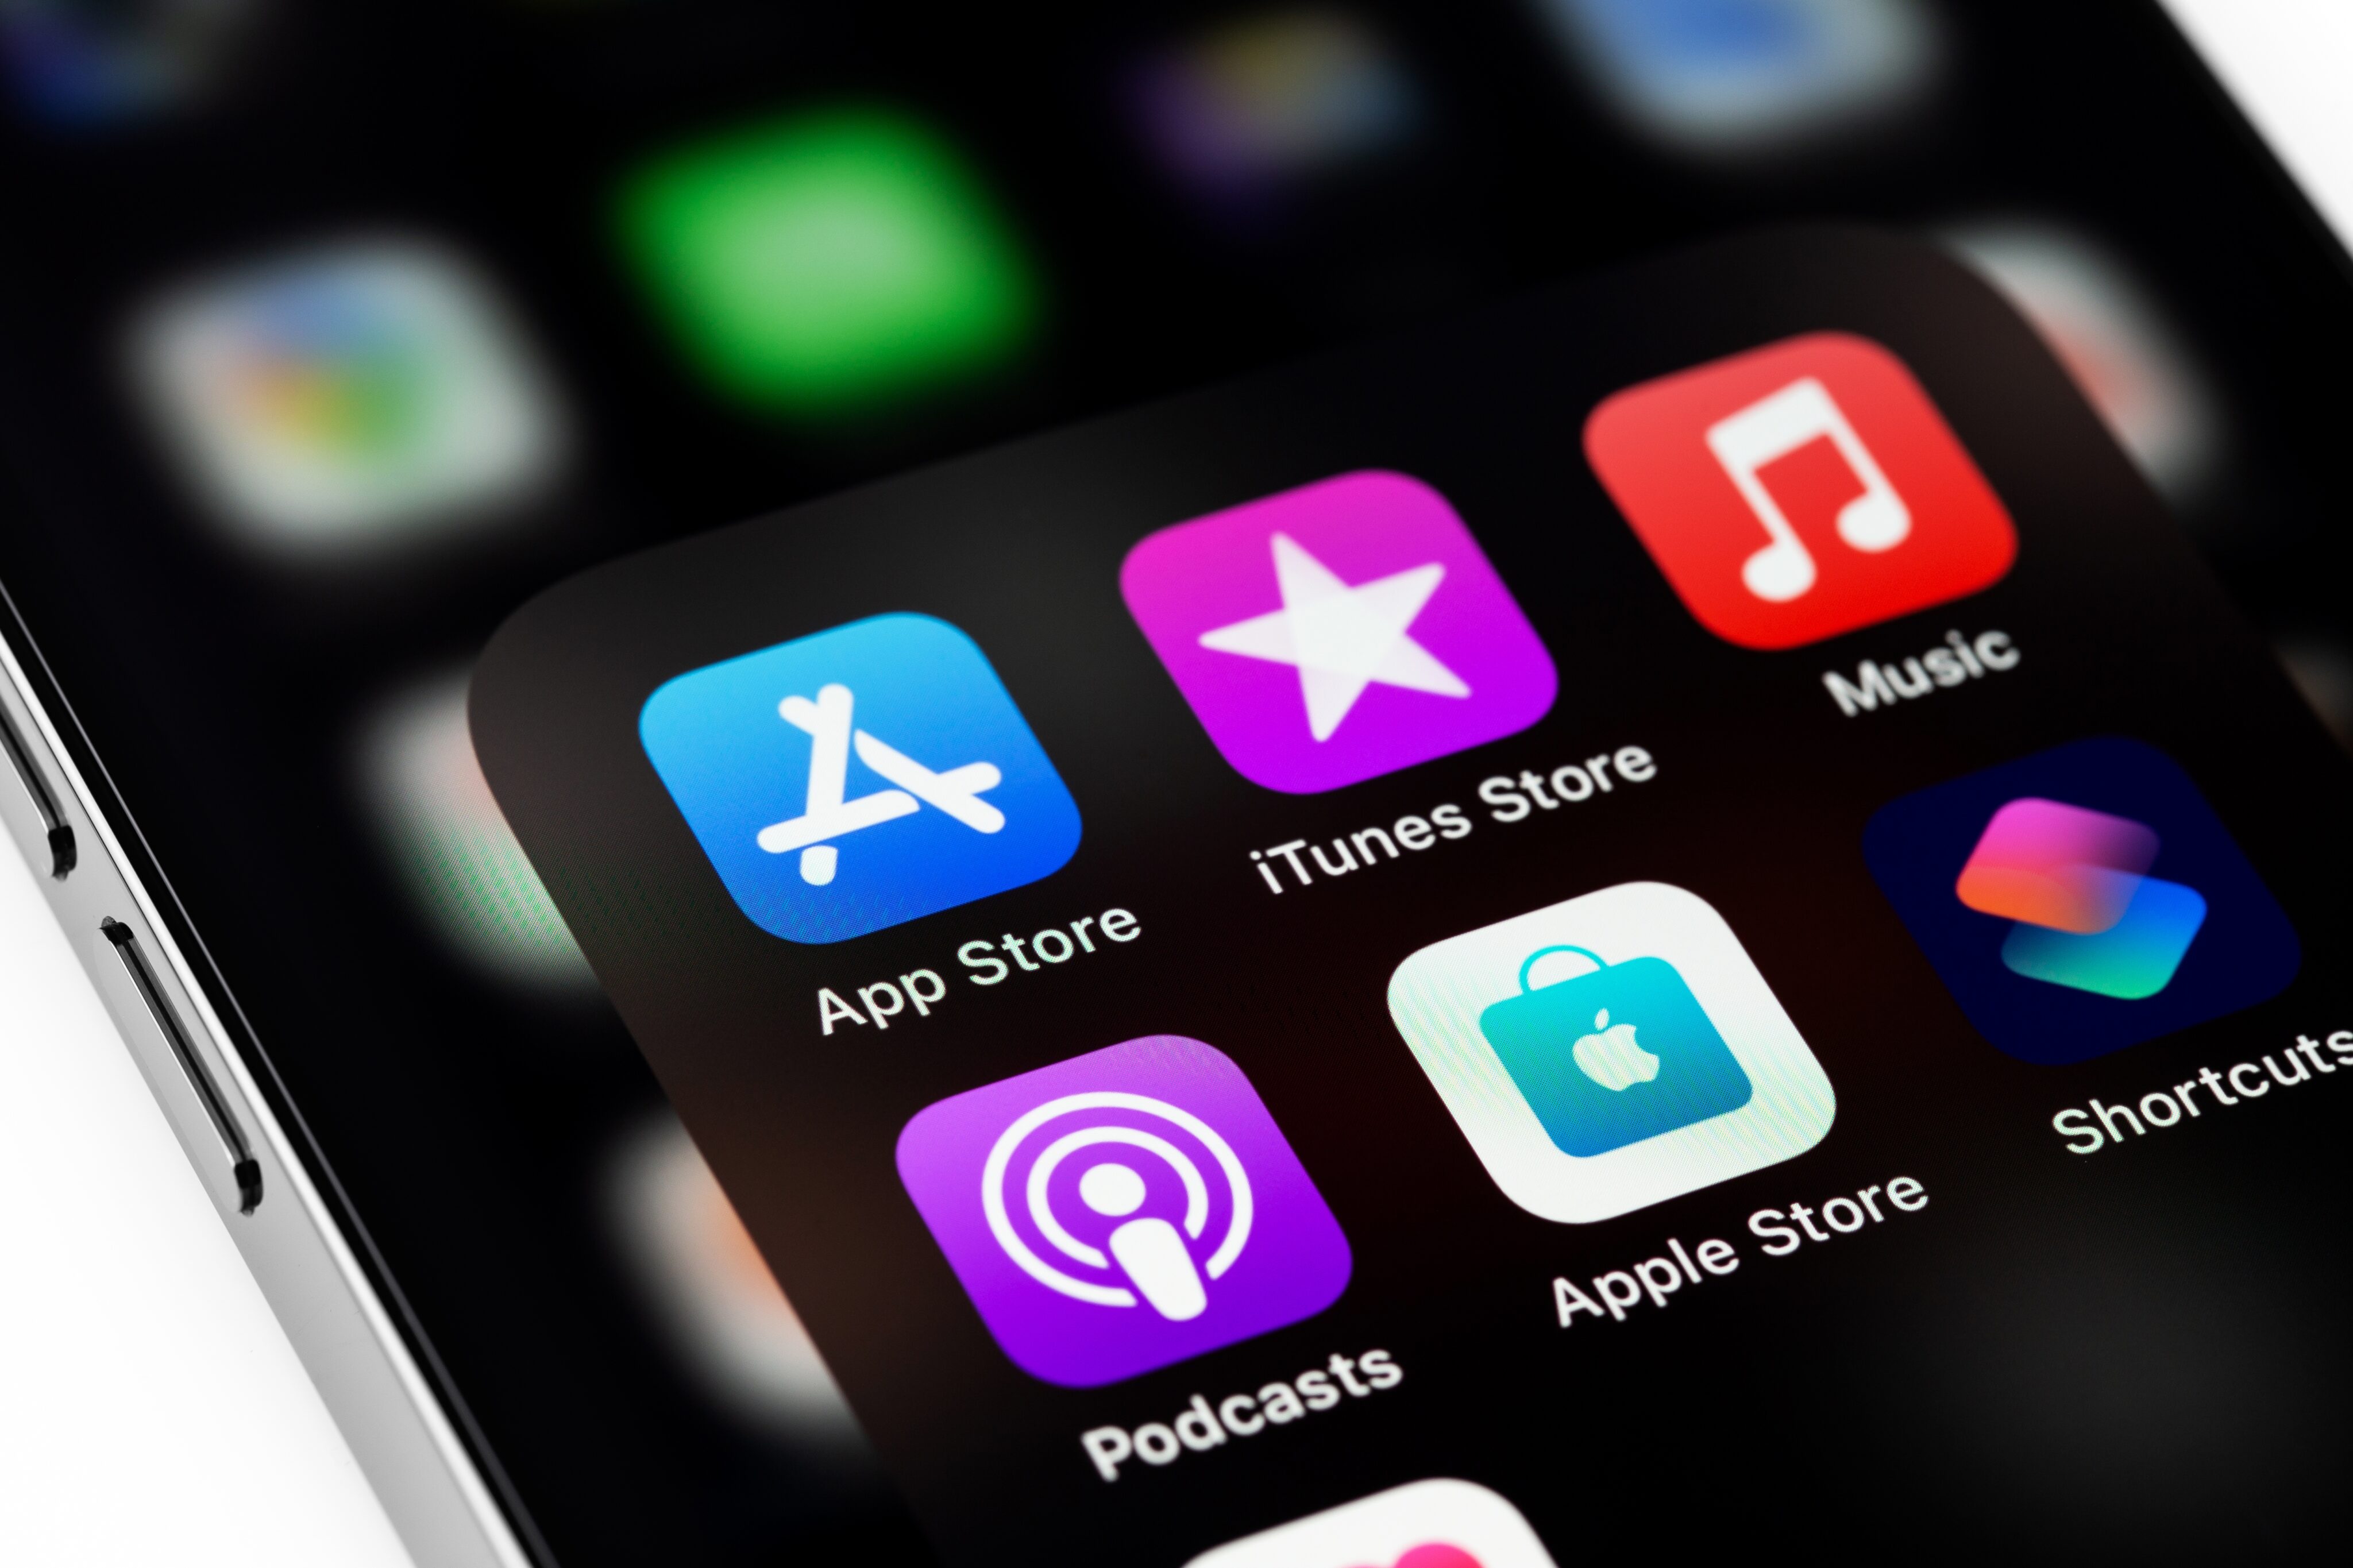 App Store Review Guidelines ou Diretrizes de Revisão da Apple